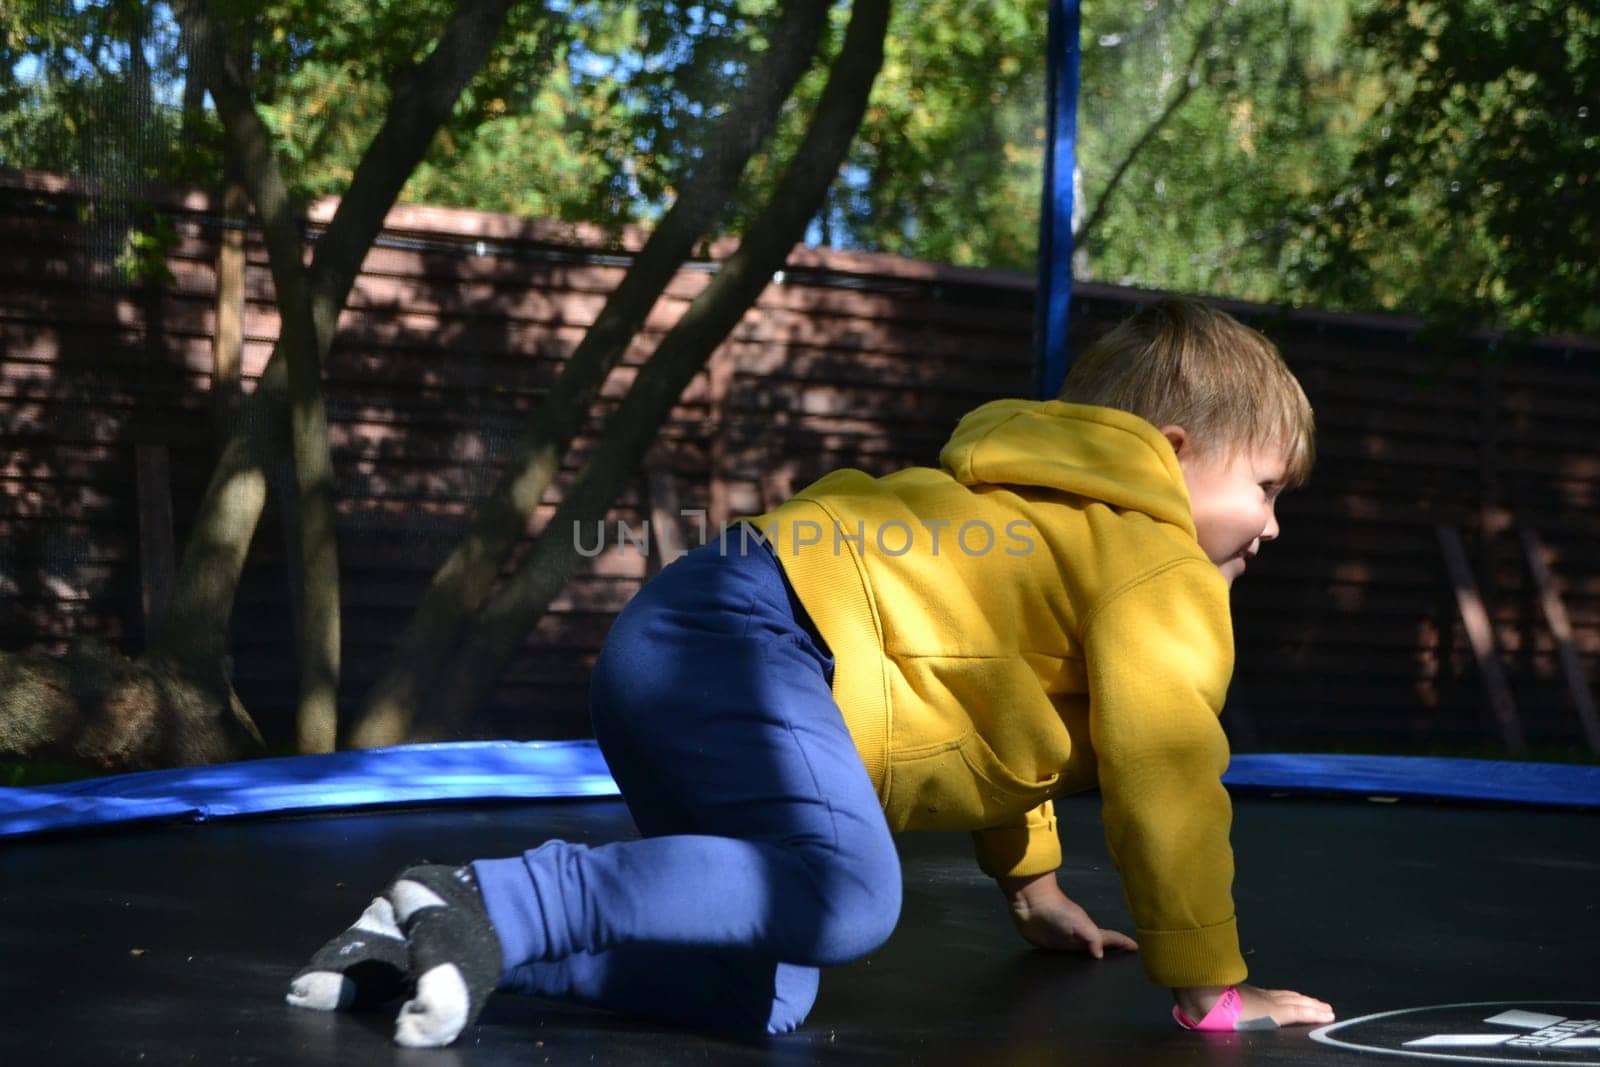 A boy on a trampoline in the garden. by milastokerpro